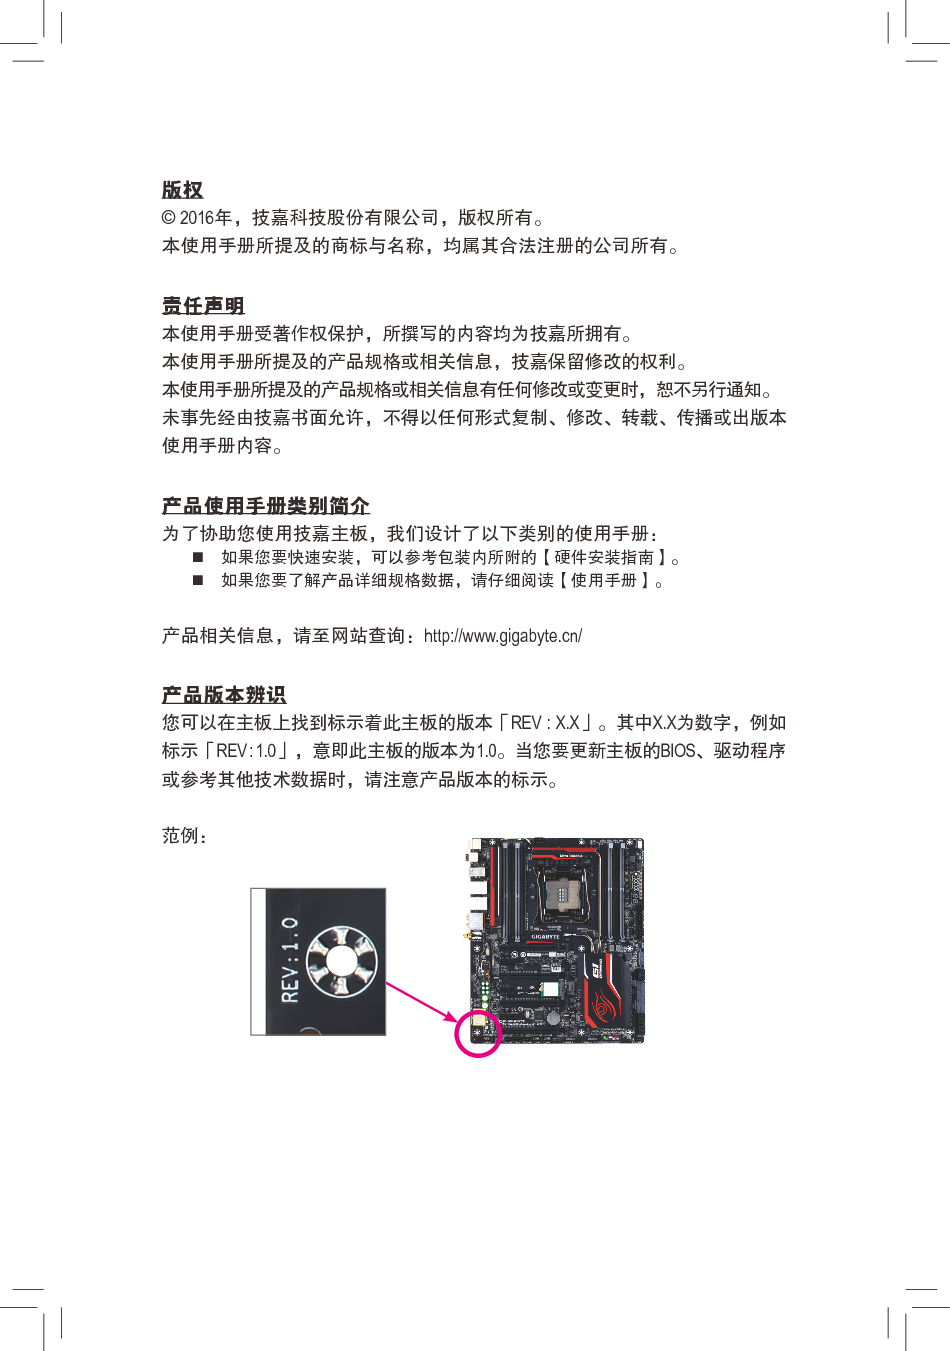 技嘉 Gigabyte GA-X99-UD4P 使用手册 第2页